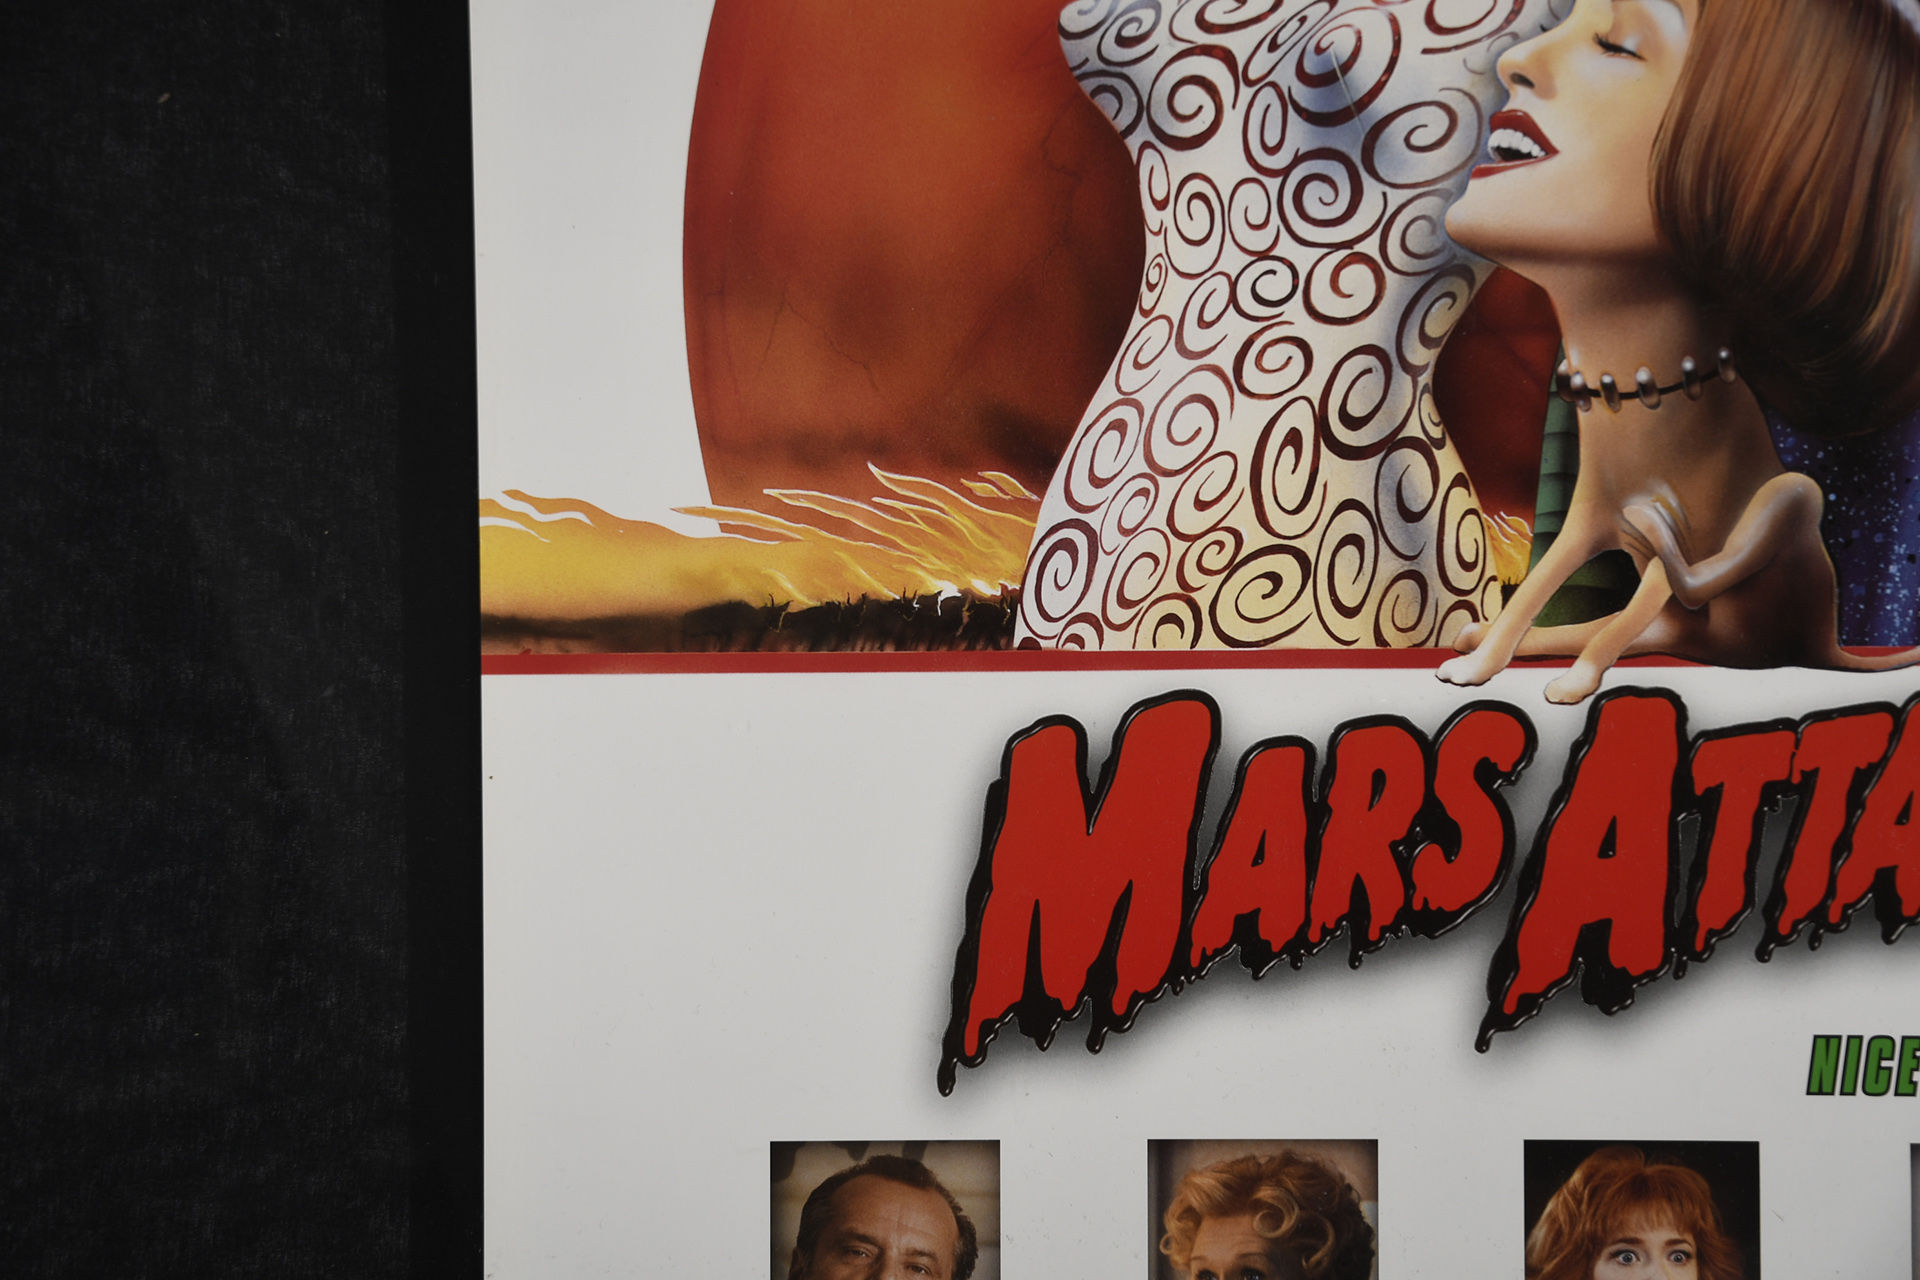 "Mars Attacks!" Cinema Poster